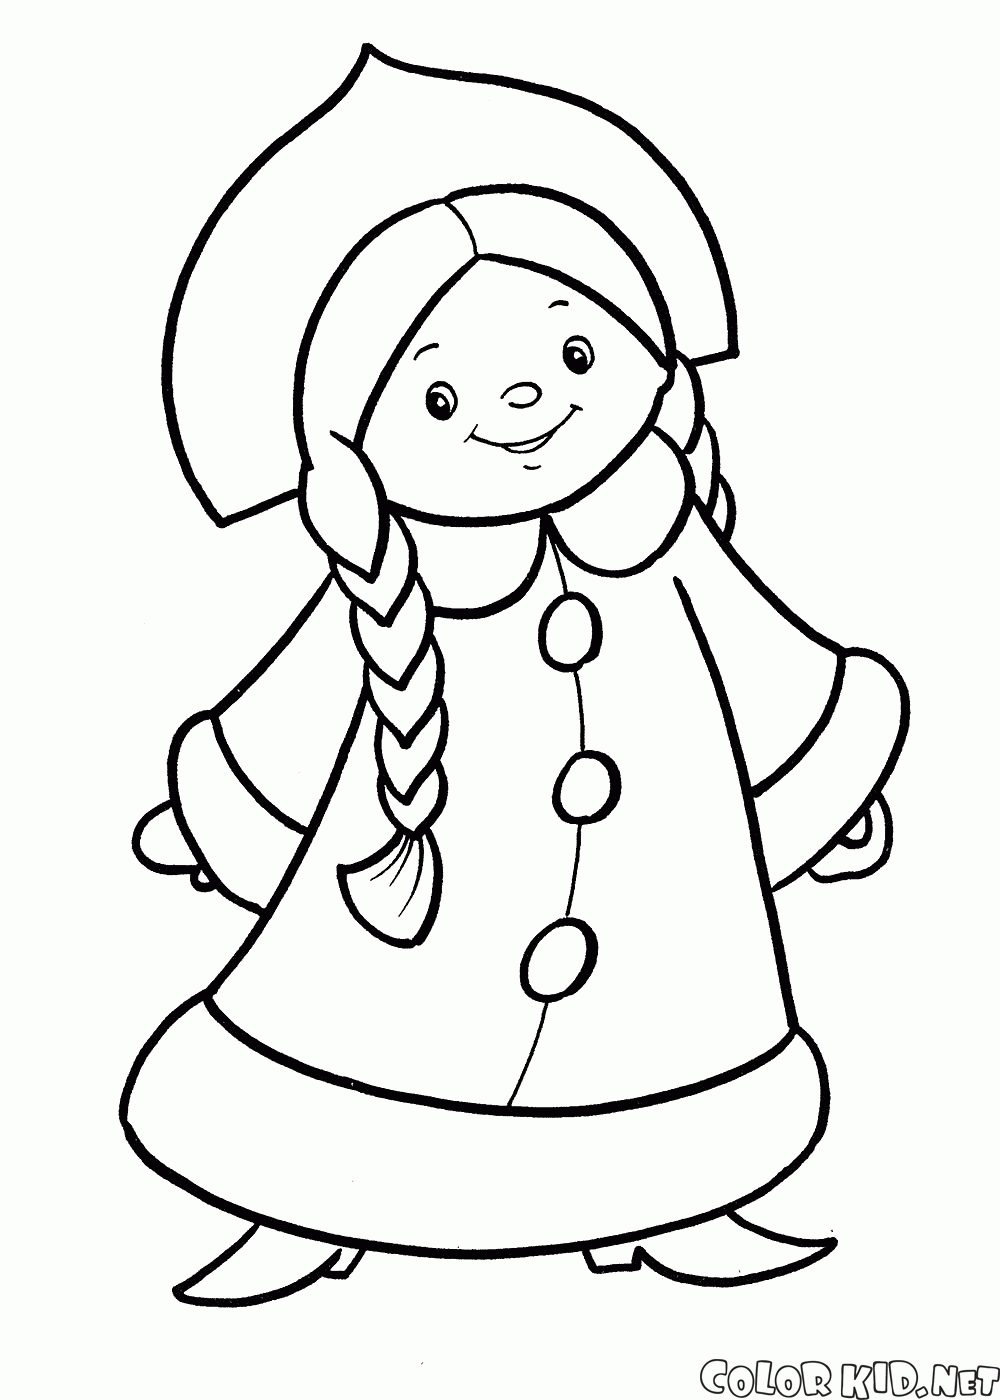 Navidad traje de doncella de nieve